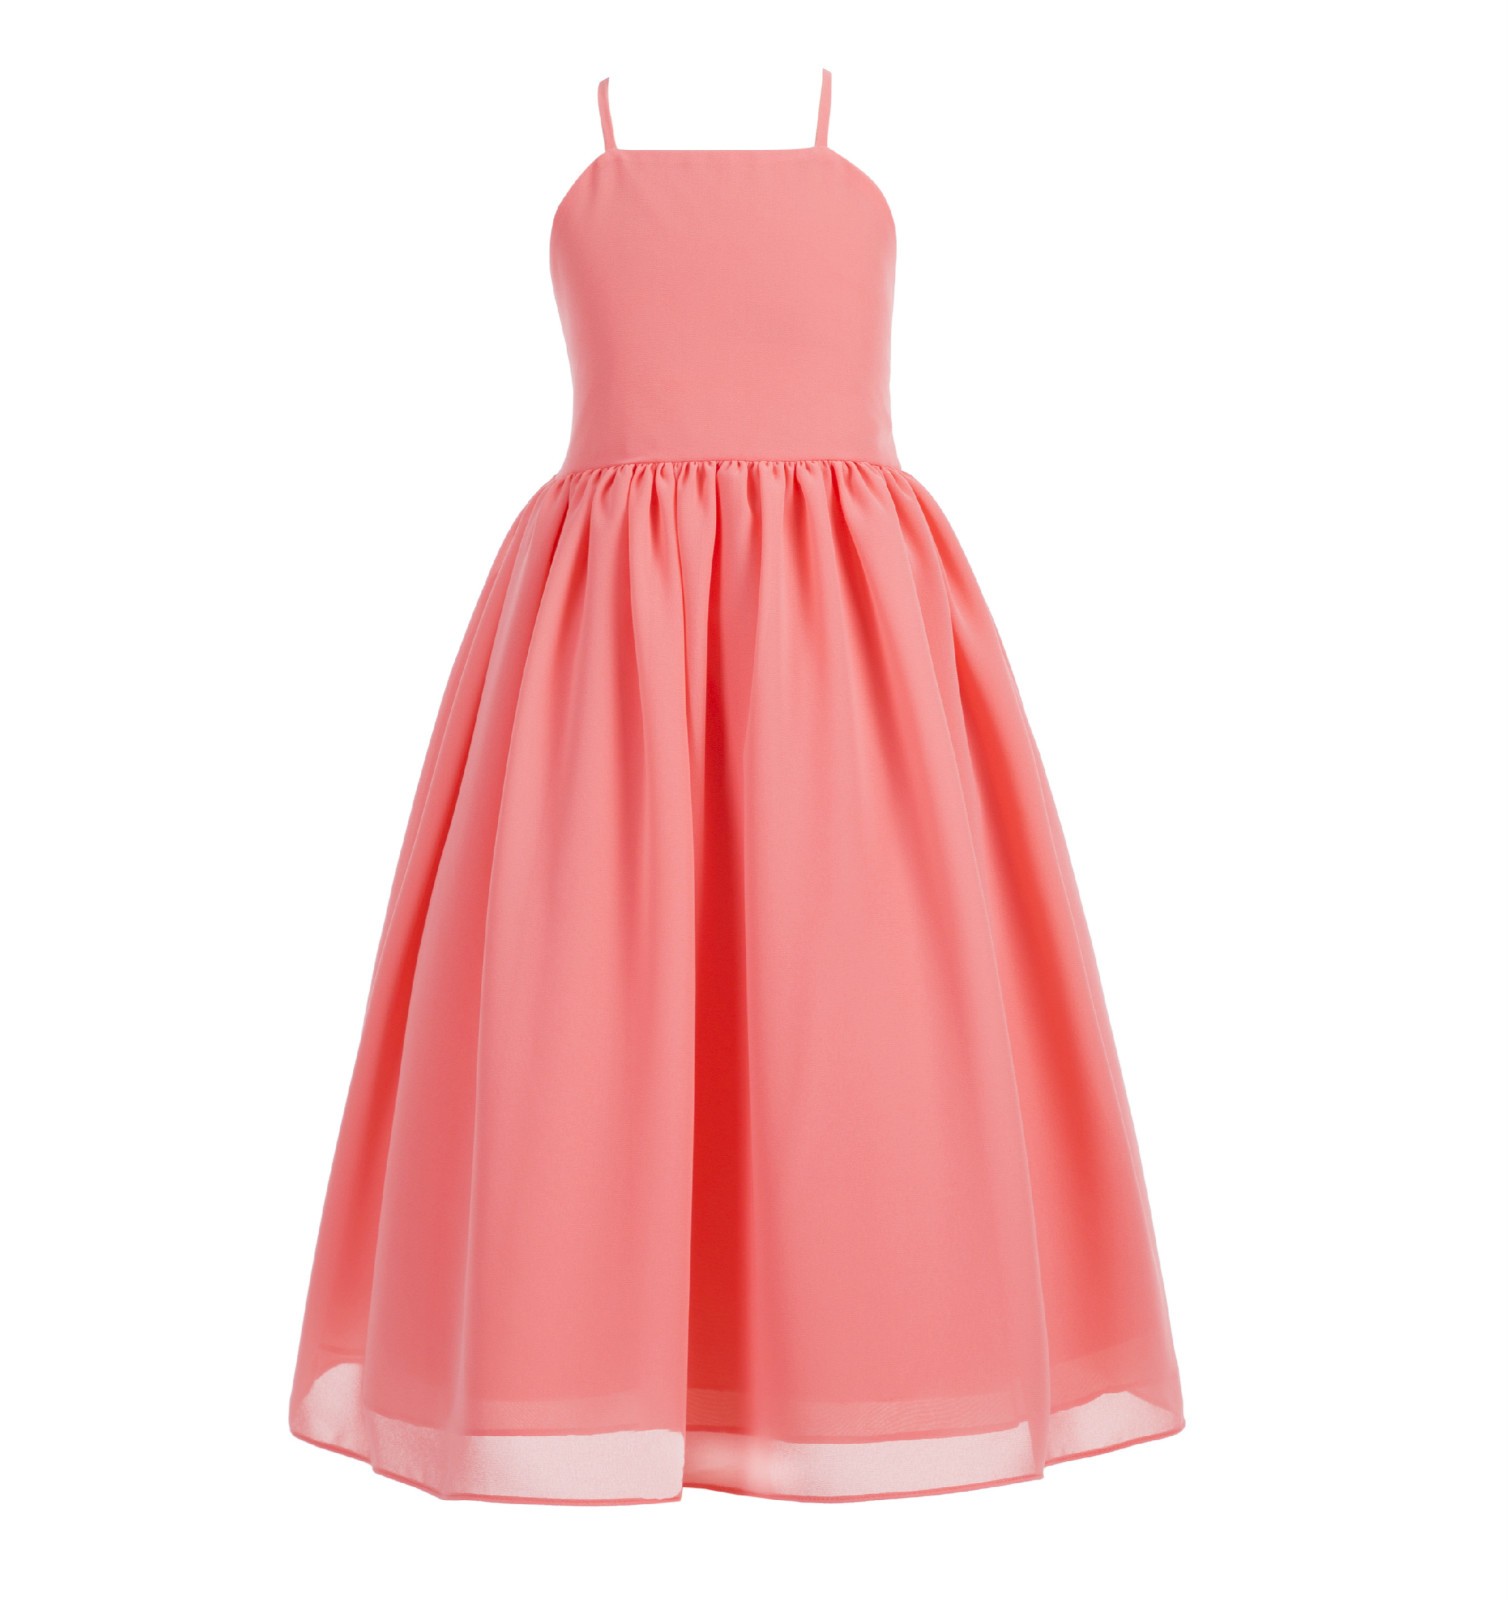 Coral Criss Cross Chiffon Flower Girl Dress Summer Dresses 191